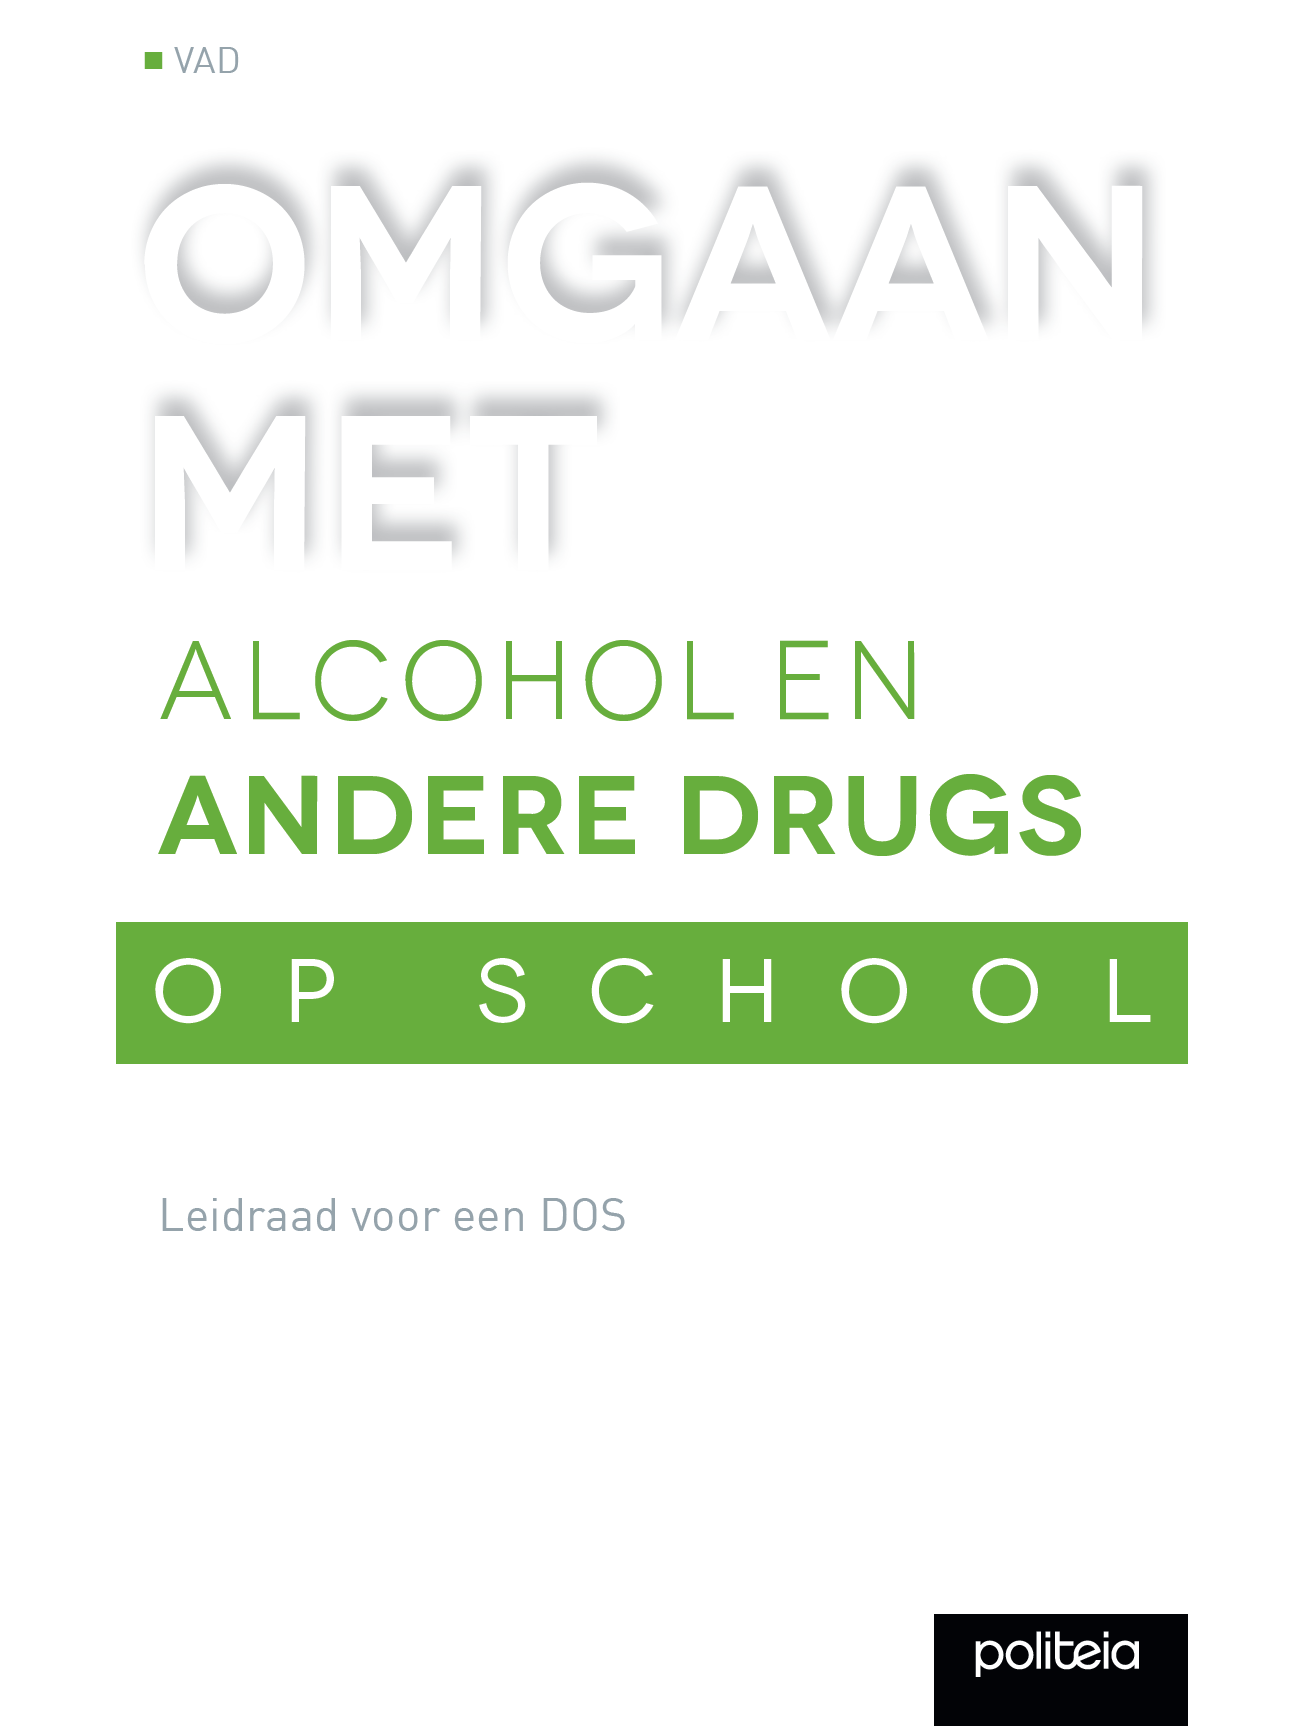 Boekomslag Met De Titel 'OMGAAN MET ALCOHOL EN ANDERE DRUGS OP SCHOOL', Een Subtitel Onderaan, Op Een Witte En Groene Achtergrond